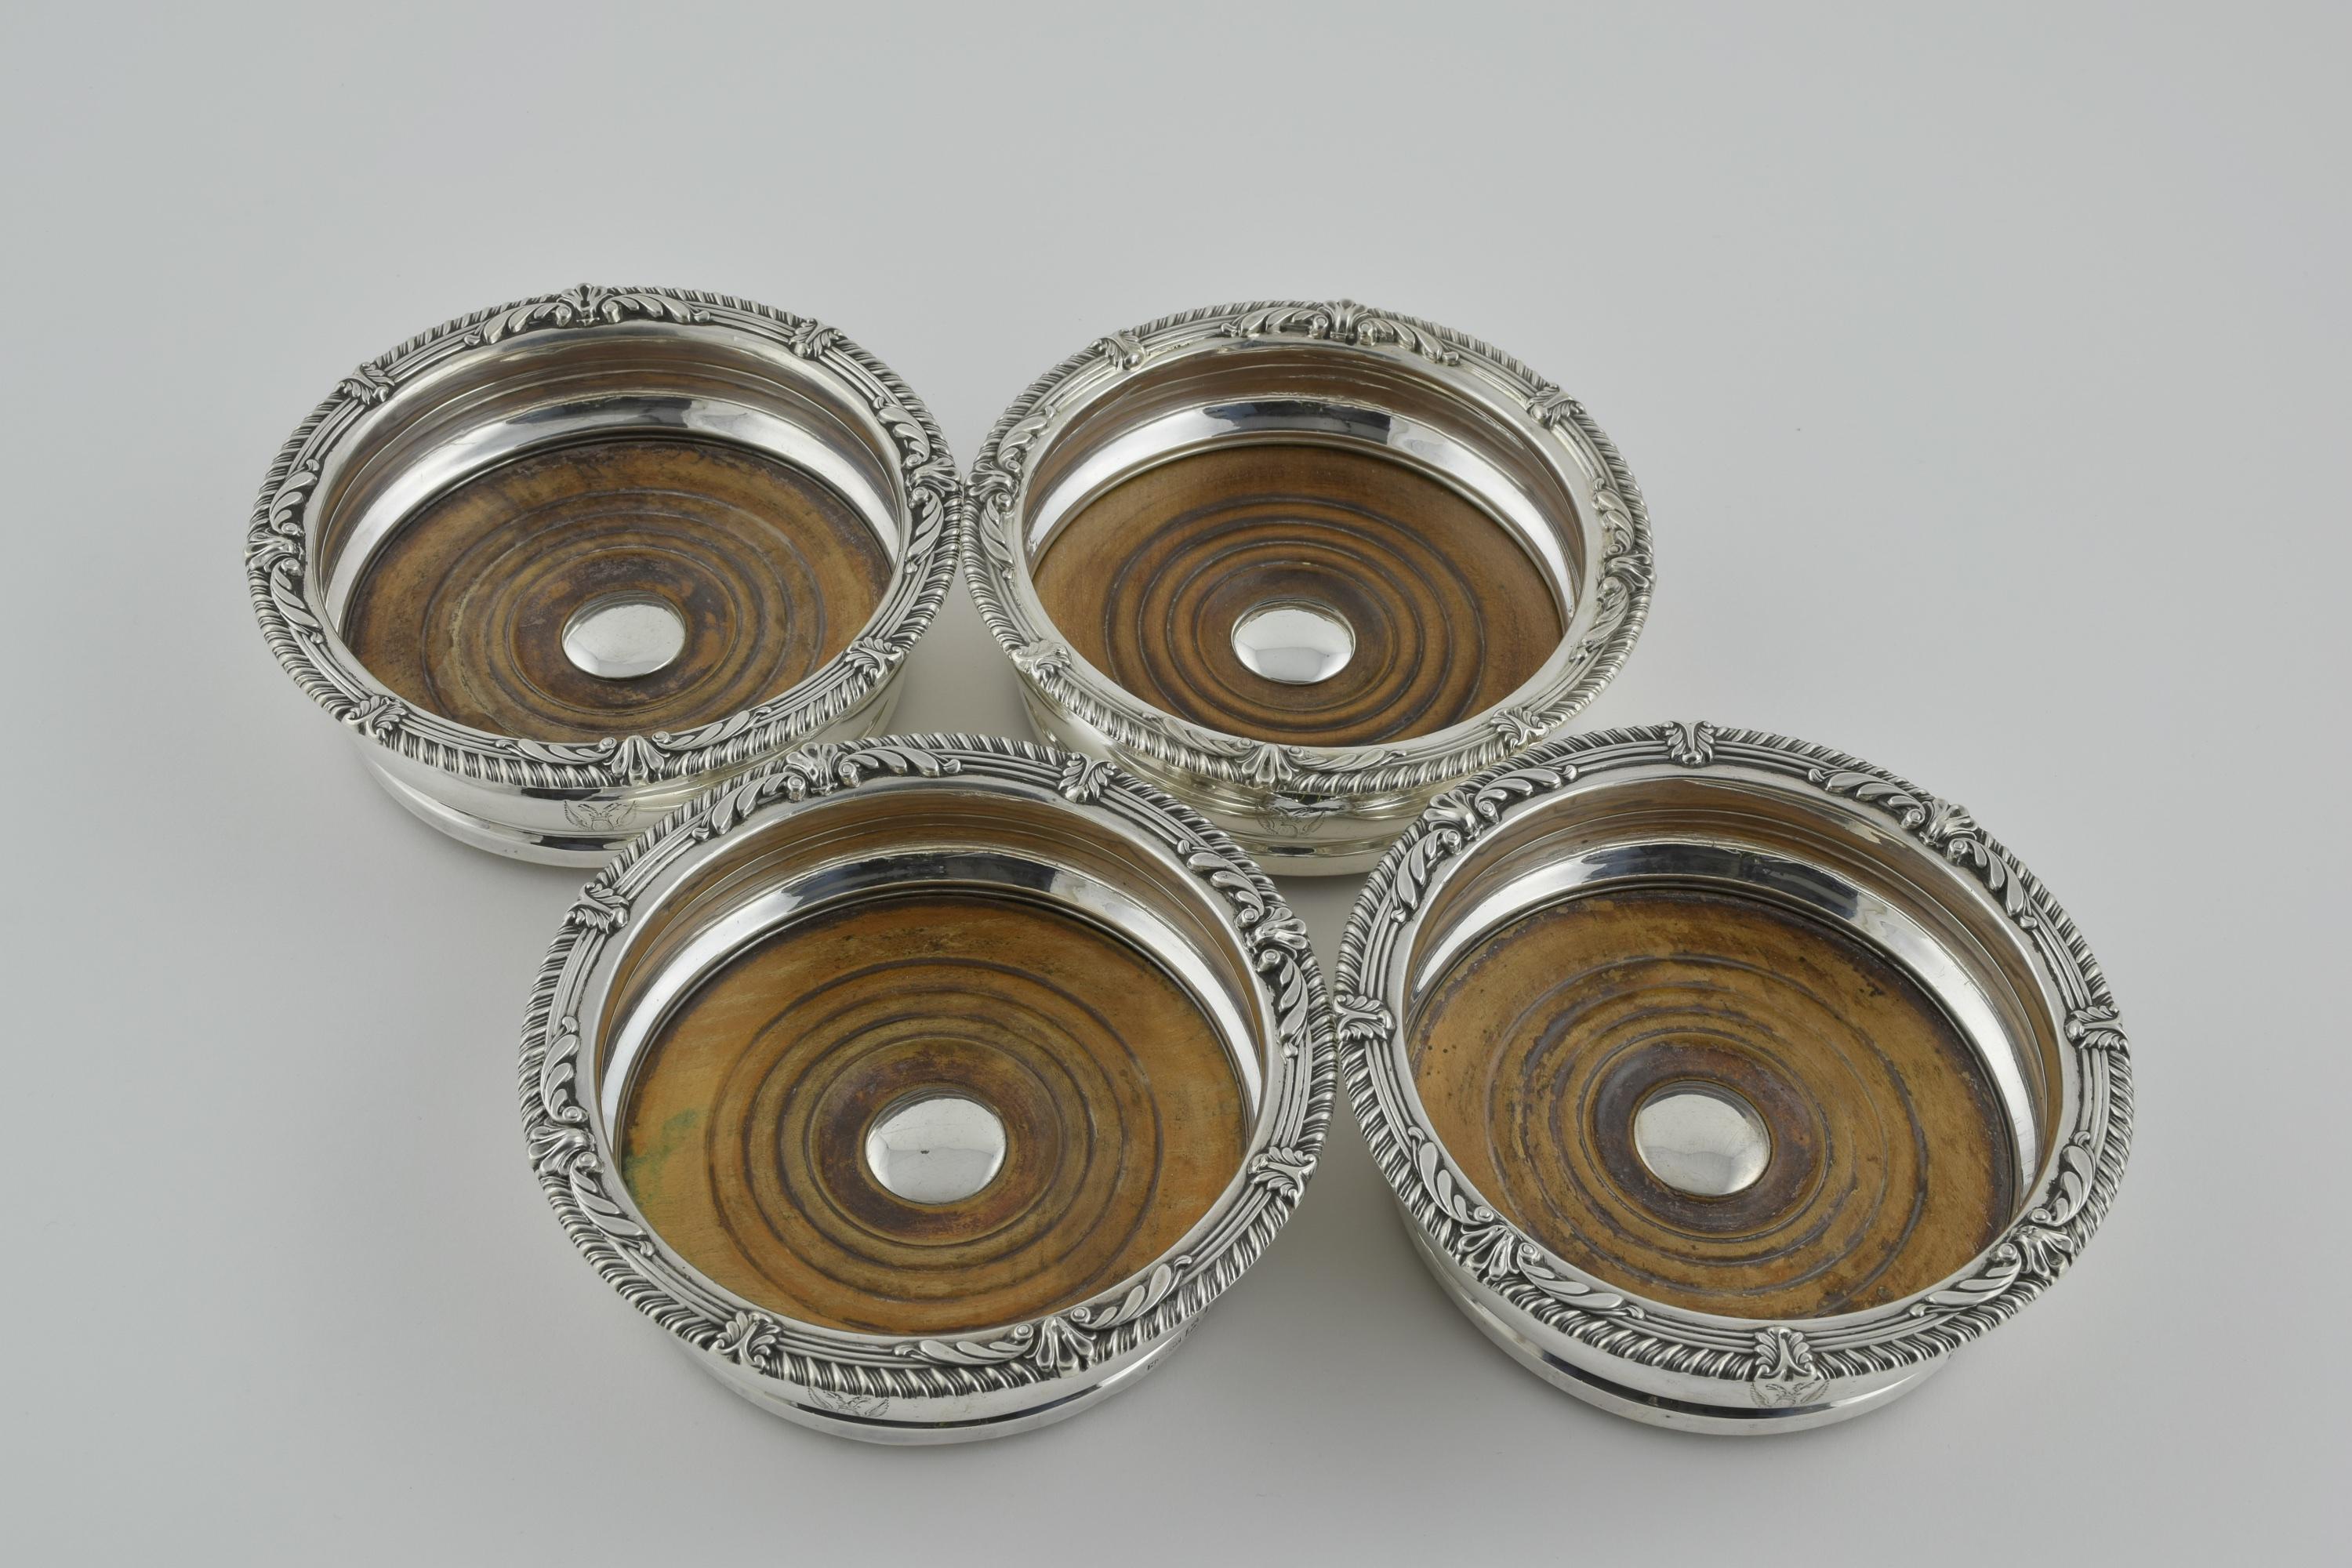 Punzierungen für Mark Furniss and Co Sheffield, 1813. Traditionelle Form mit schlichtem Silberkorpus, Holzsockel und traditionellem Muschelgadroon. 